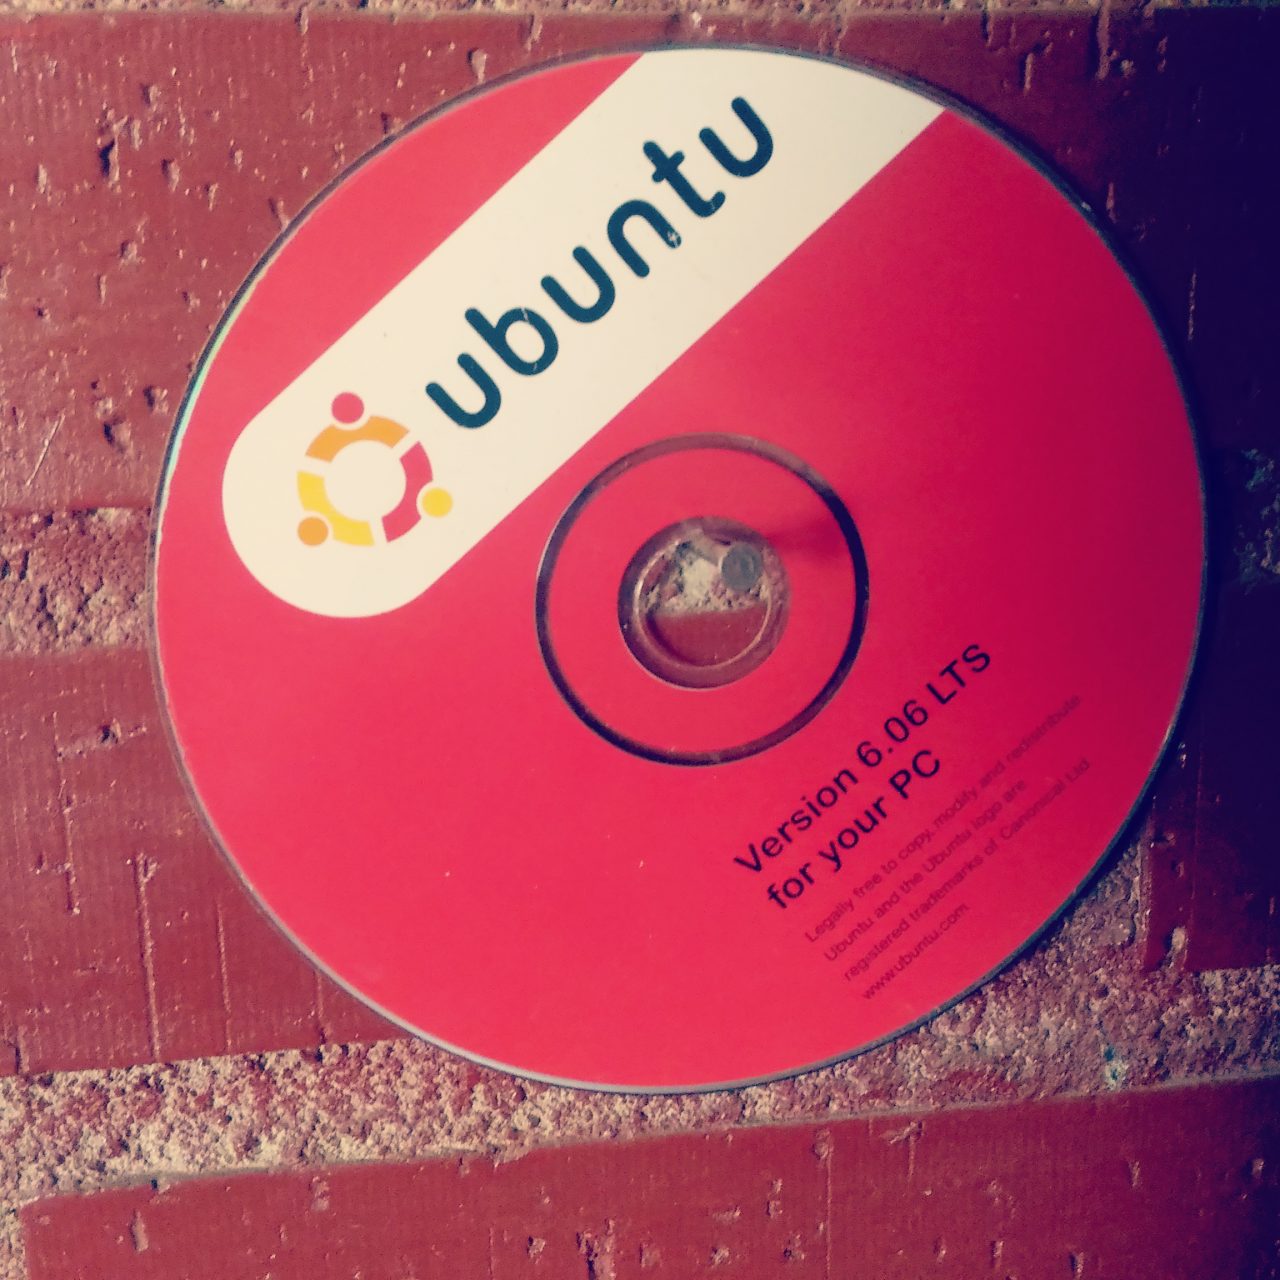 Ubuntu 6.06 tiempos pasados